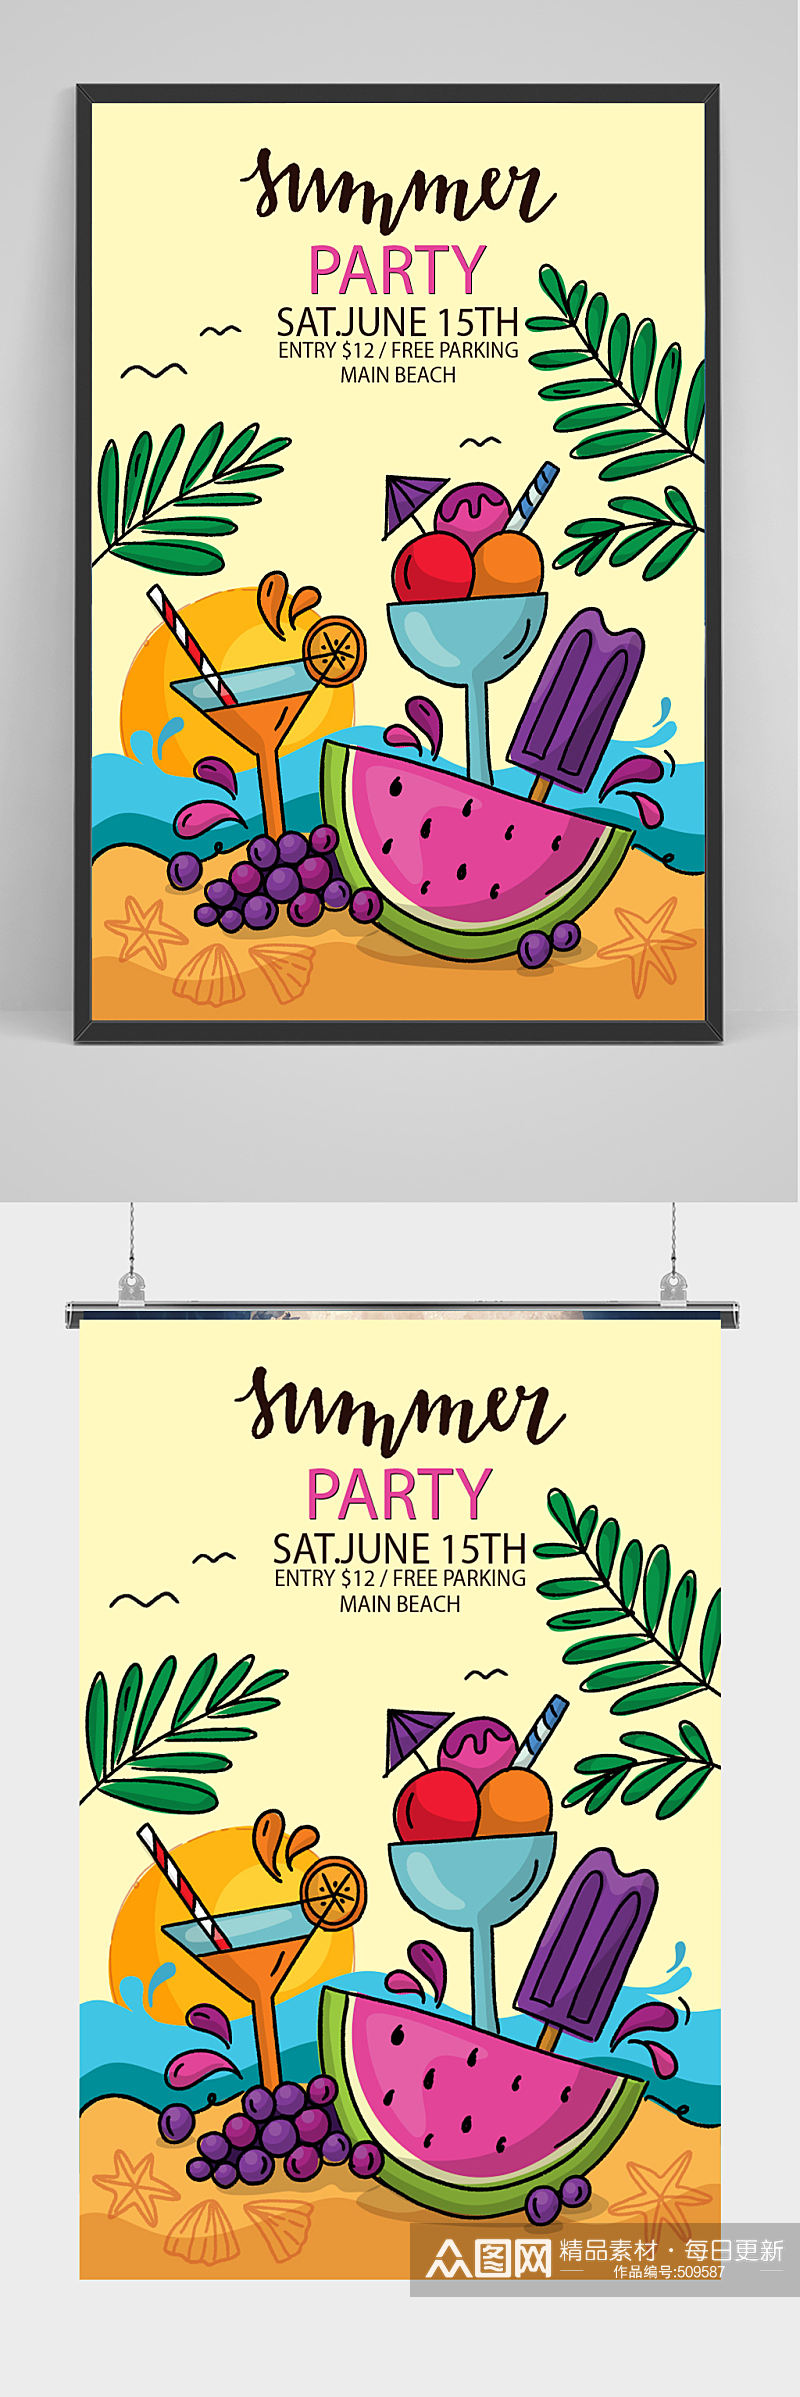 夏日水果派对海报设计素材